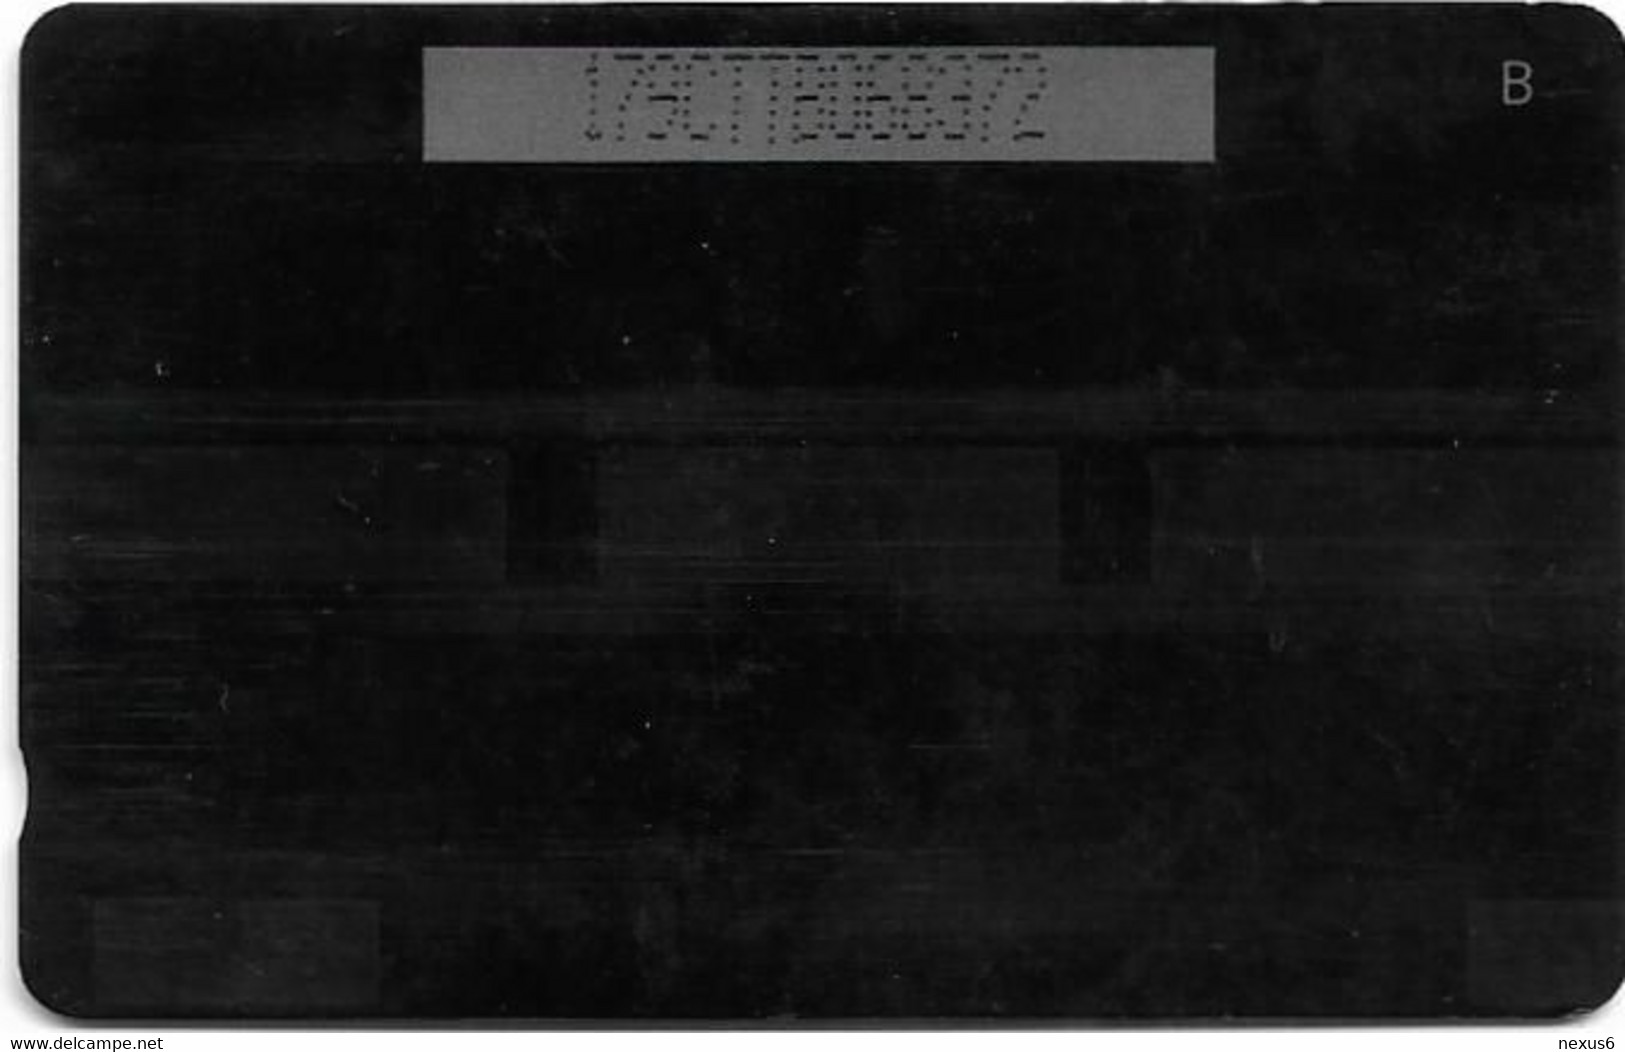 Trinidad & Tobago - TSTT (GPT) - Ato Boldon - 179CTTB (Normal 0), 1997, 350.000ex, Used - Trinidad & Tobago